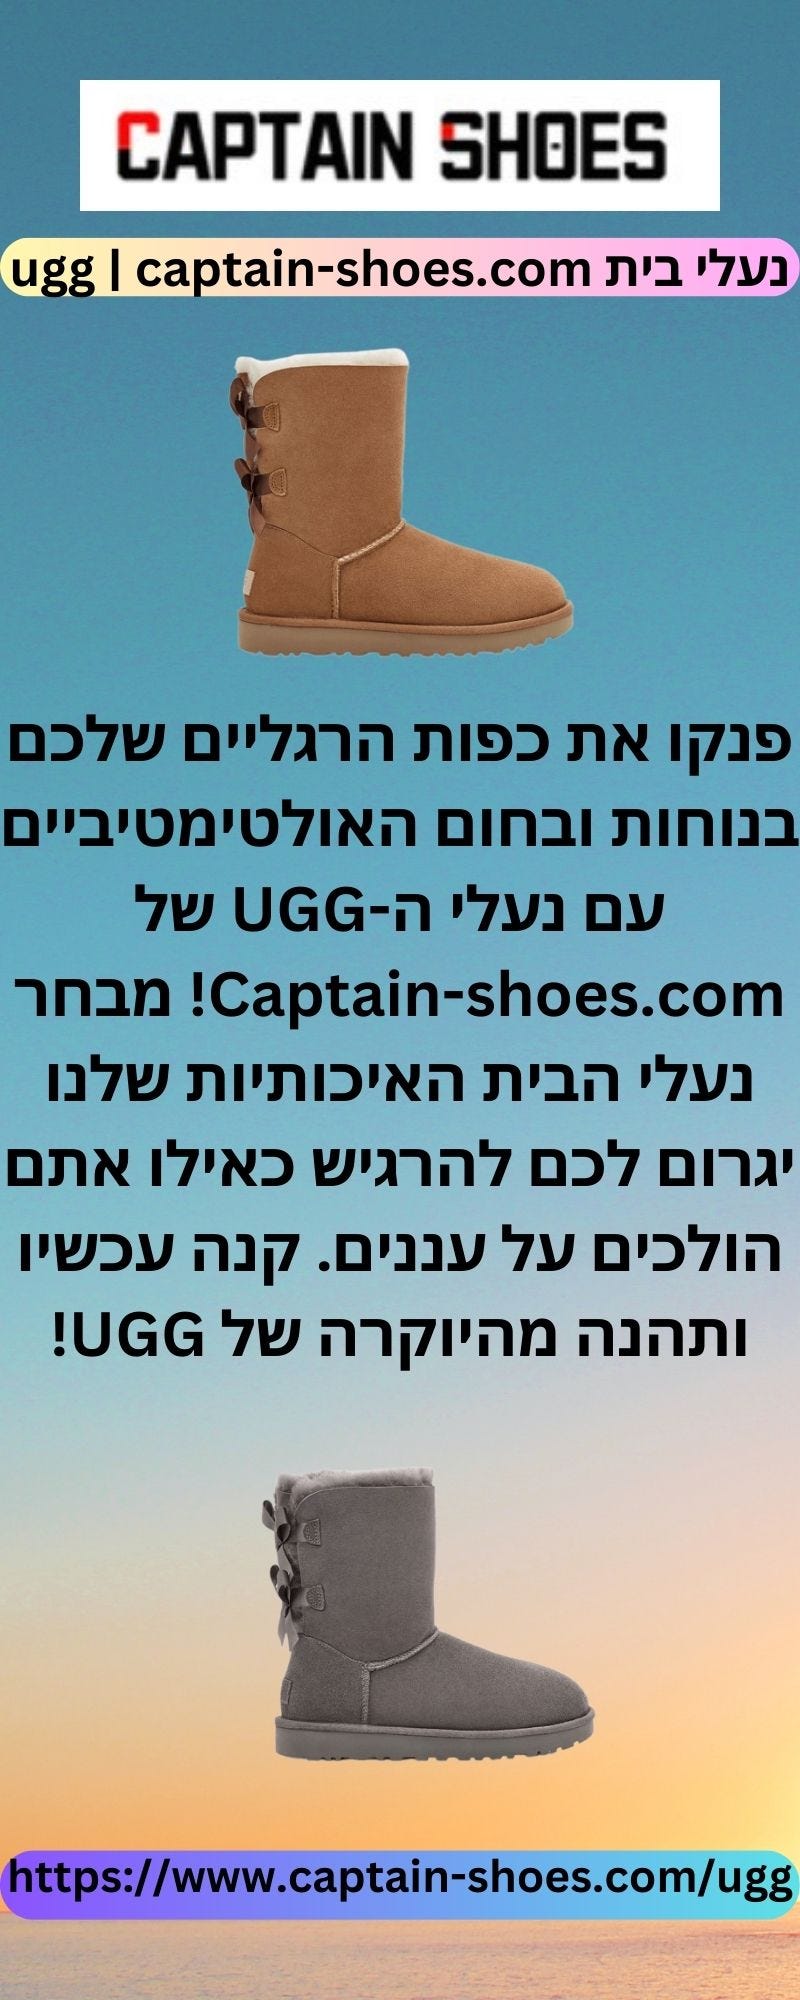 נעלי בית ugg | captain-shoes.com - captainshoes - Medium